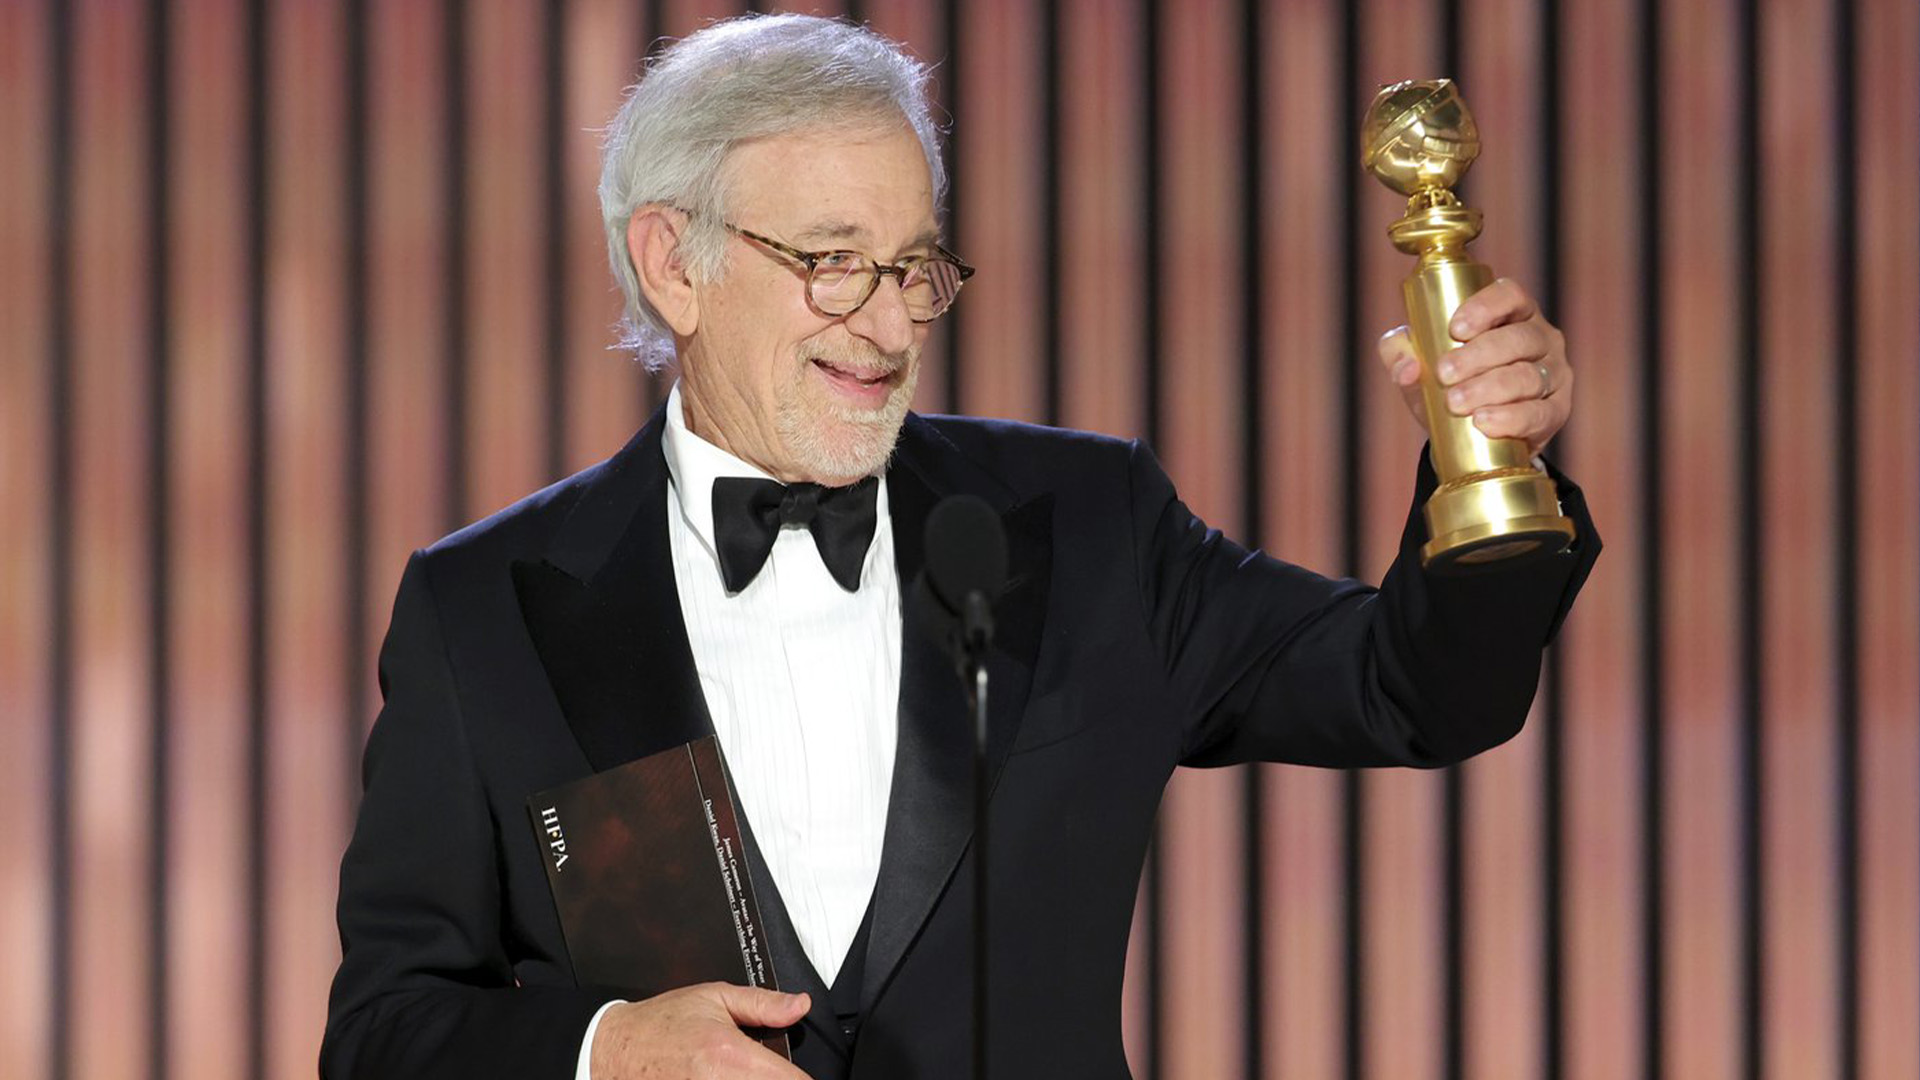 Cette image publiée par NBC montre Steven Spielberg acceptant le prix du meilleur réalisateur pour «The Fabelmans» lors de la 80e cérémonie annuelle des Golden Globe Awards au Beverly Hilton Hotel le mardi 10 janvier 2023 à Beverly Hills, en Californie.